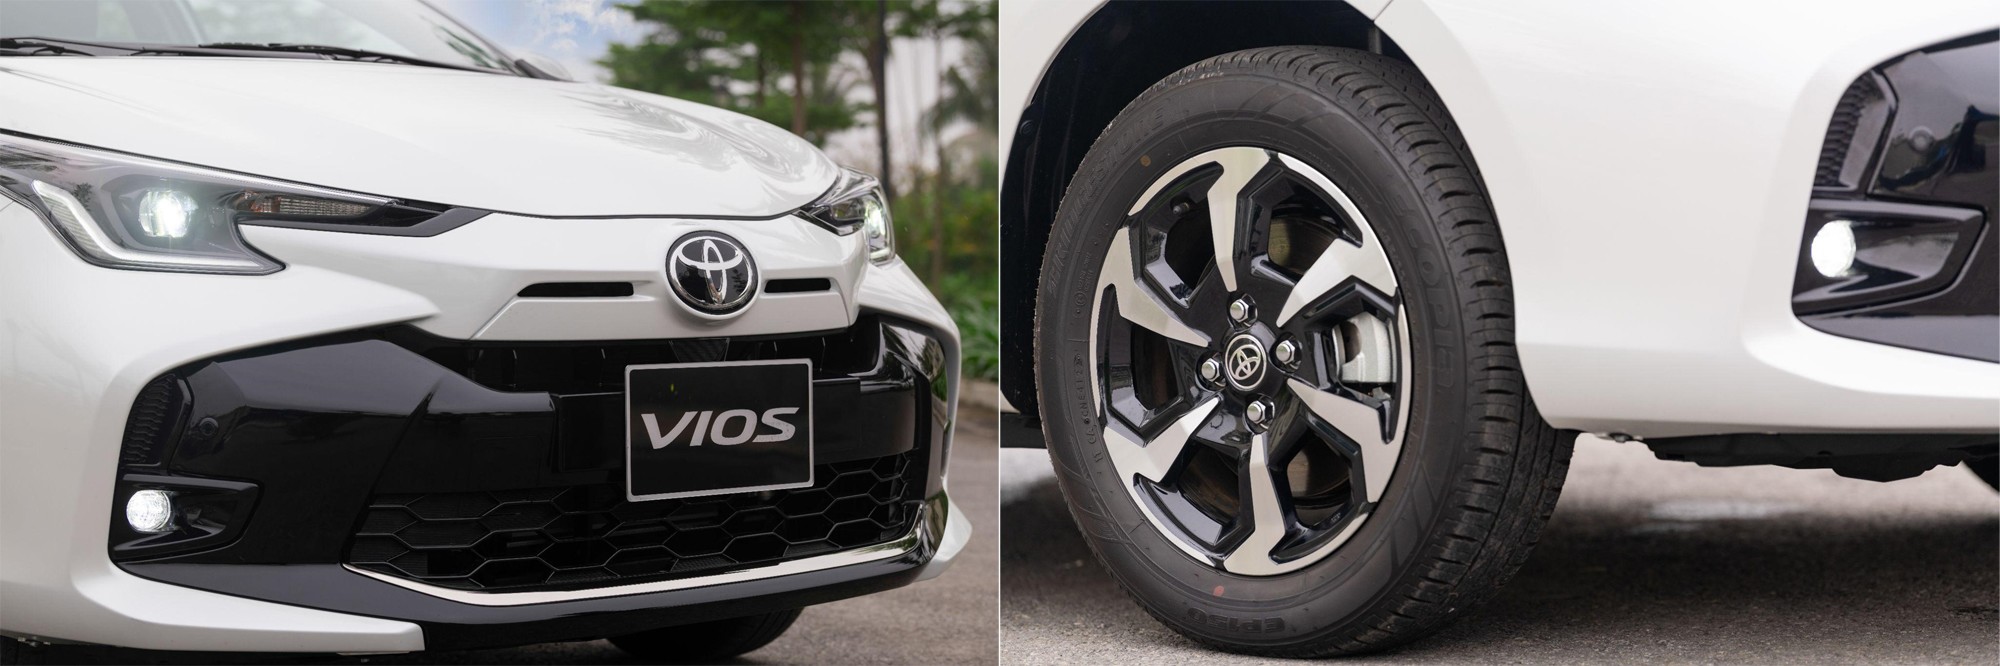 Những giá trị tạo nên tượng đài ‘vua doanh số’ của Toyota Vios - 3